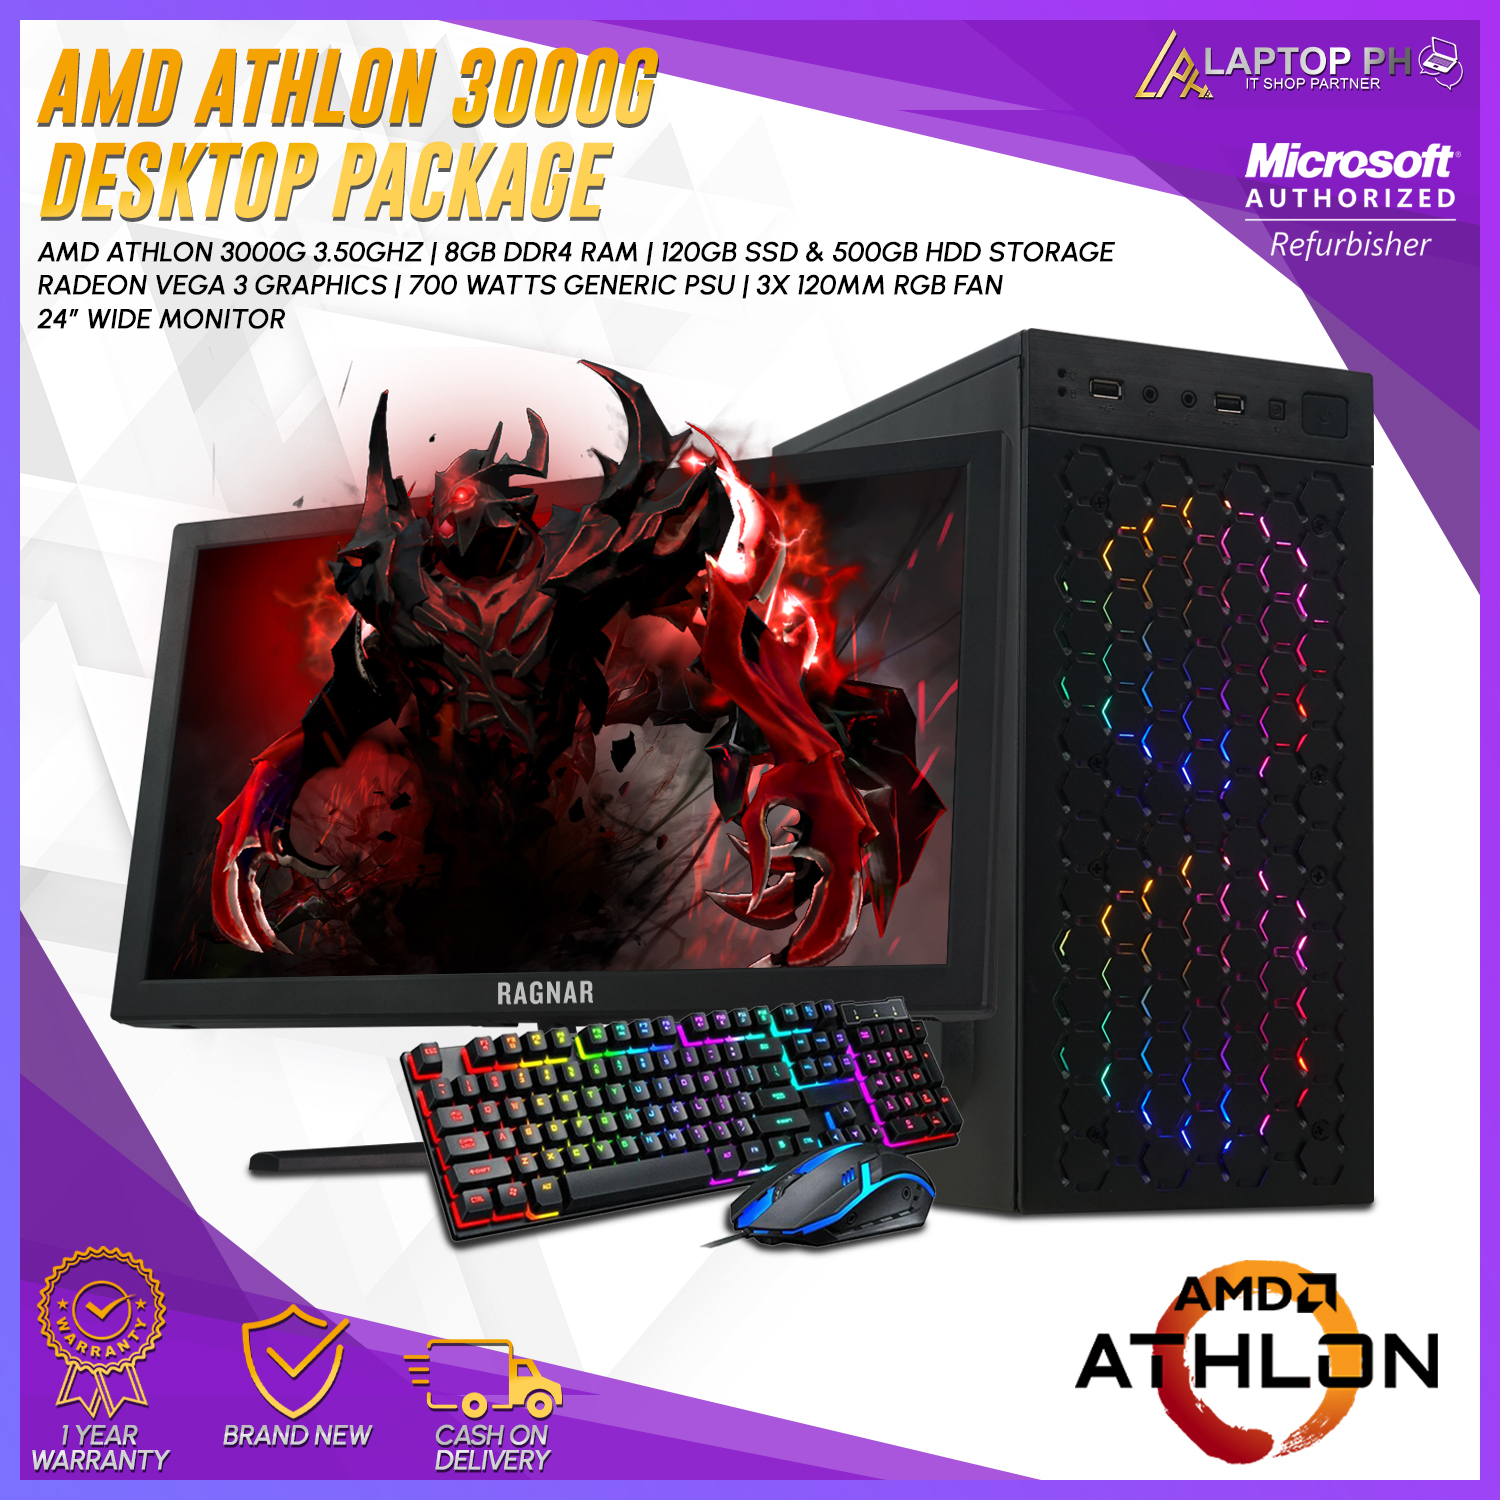 AMD Athlon 3000g PC Set Computer | Athlon 3000g with Vega 3 Graphics, 8GB  RAM DDR4, 120GB SSD, 500GB HDD, 700w Power Supply | Honeycomb Mini Tower  Case w/ 3x RGB Fans |